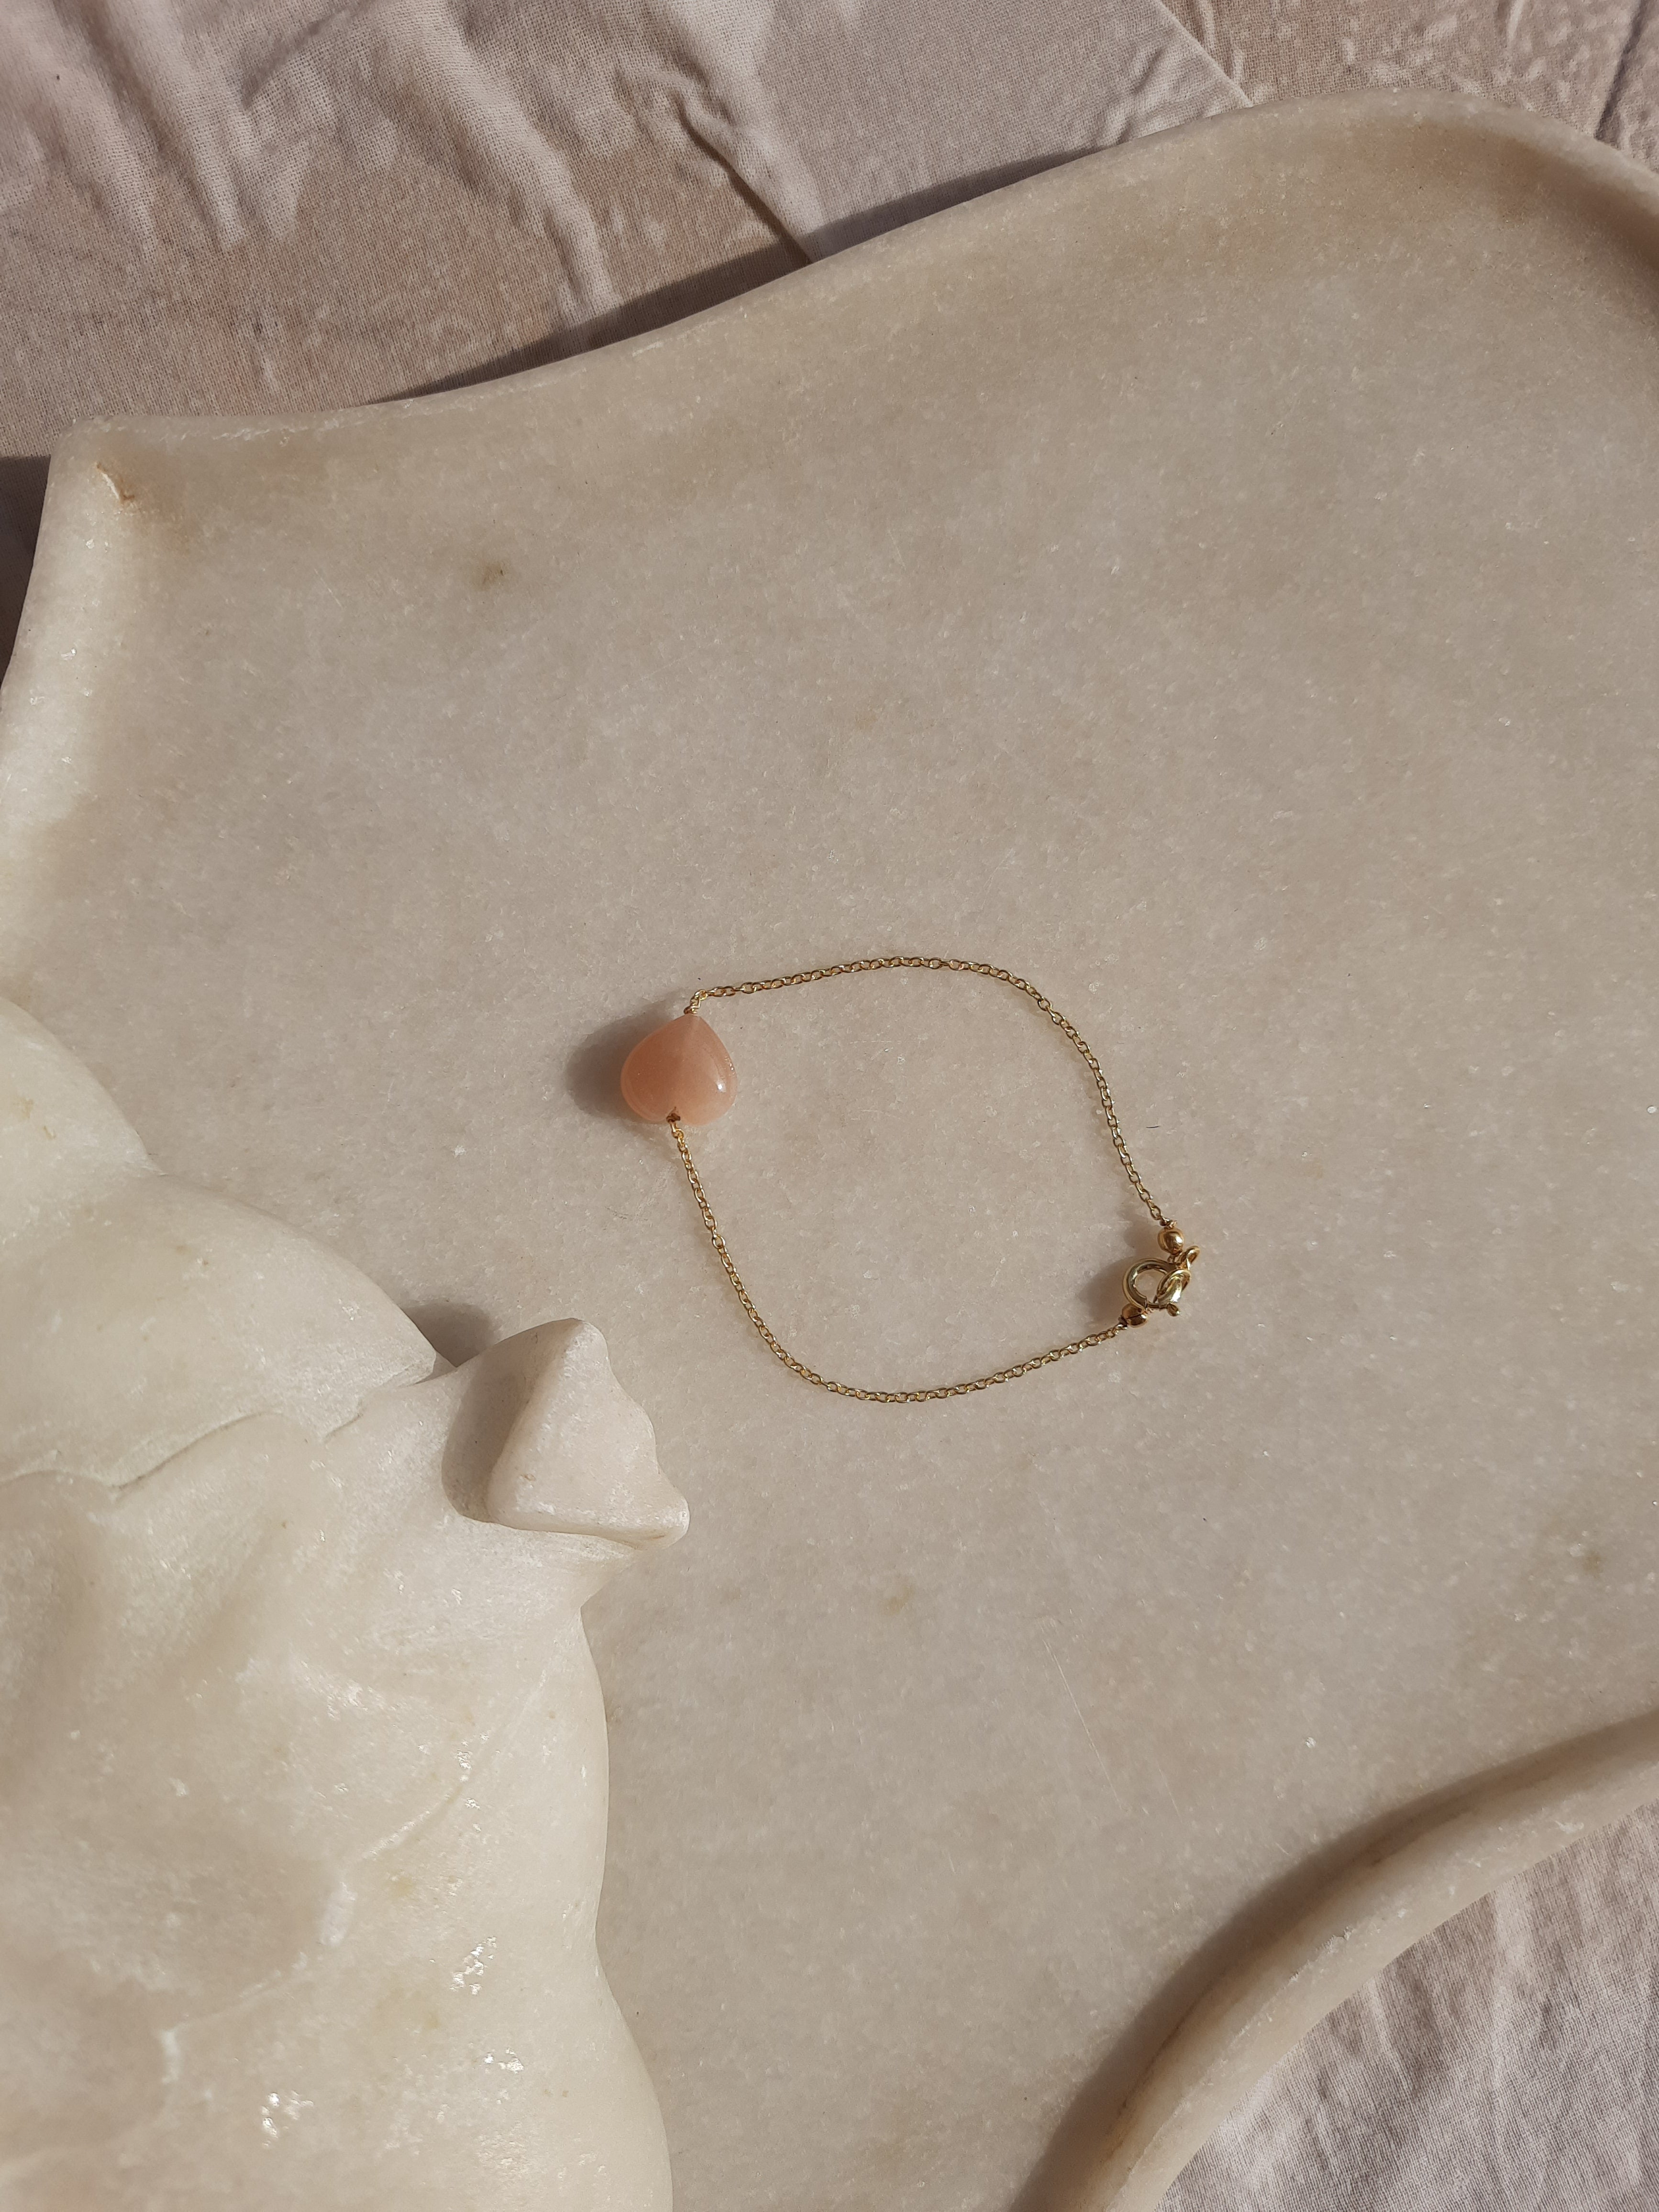 arsat - Peach Moonstone Heart Bracelet